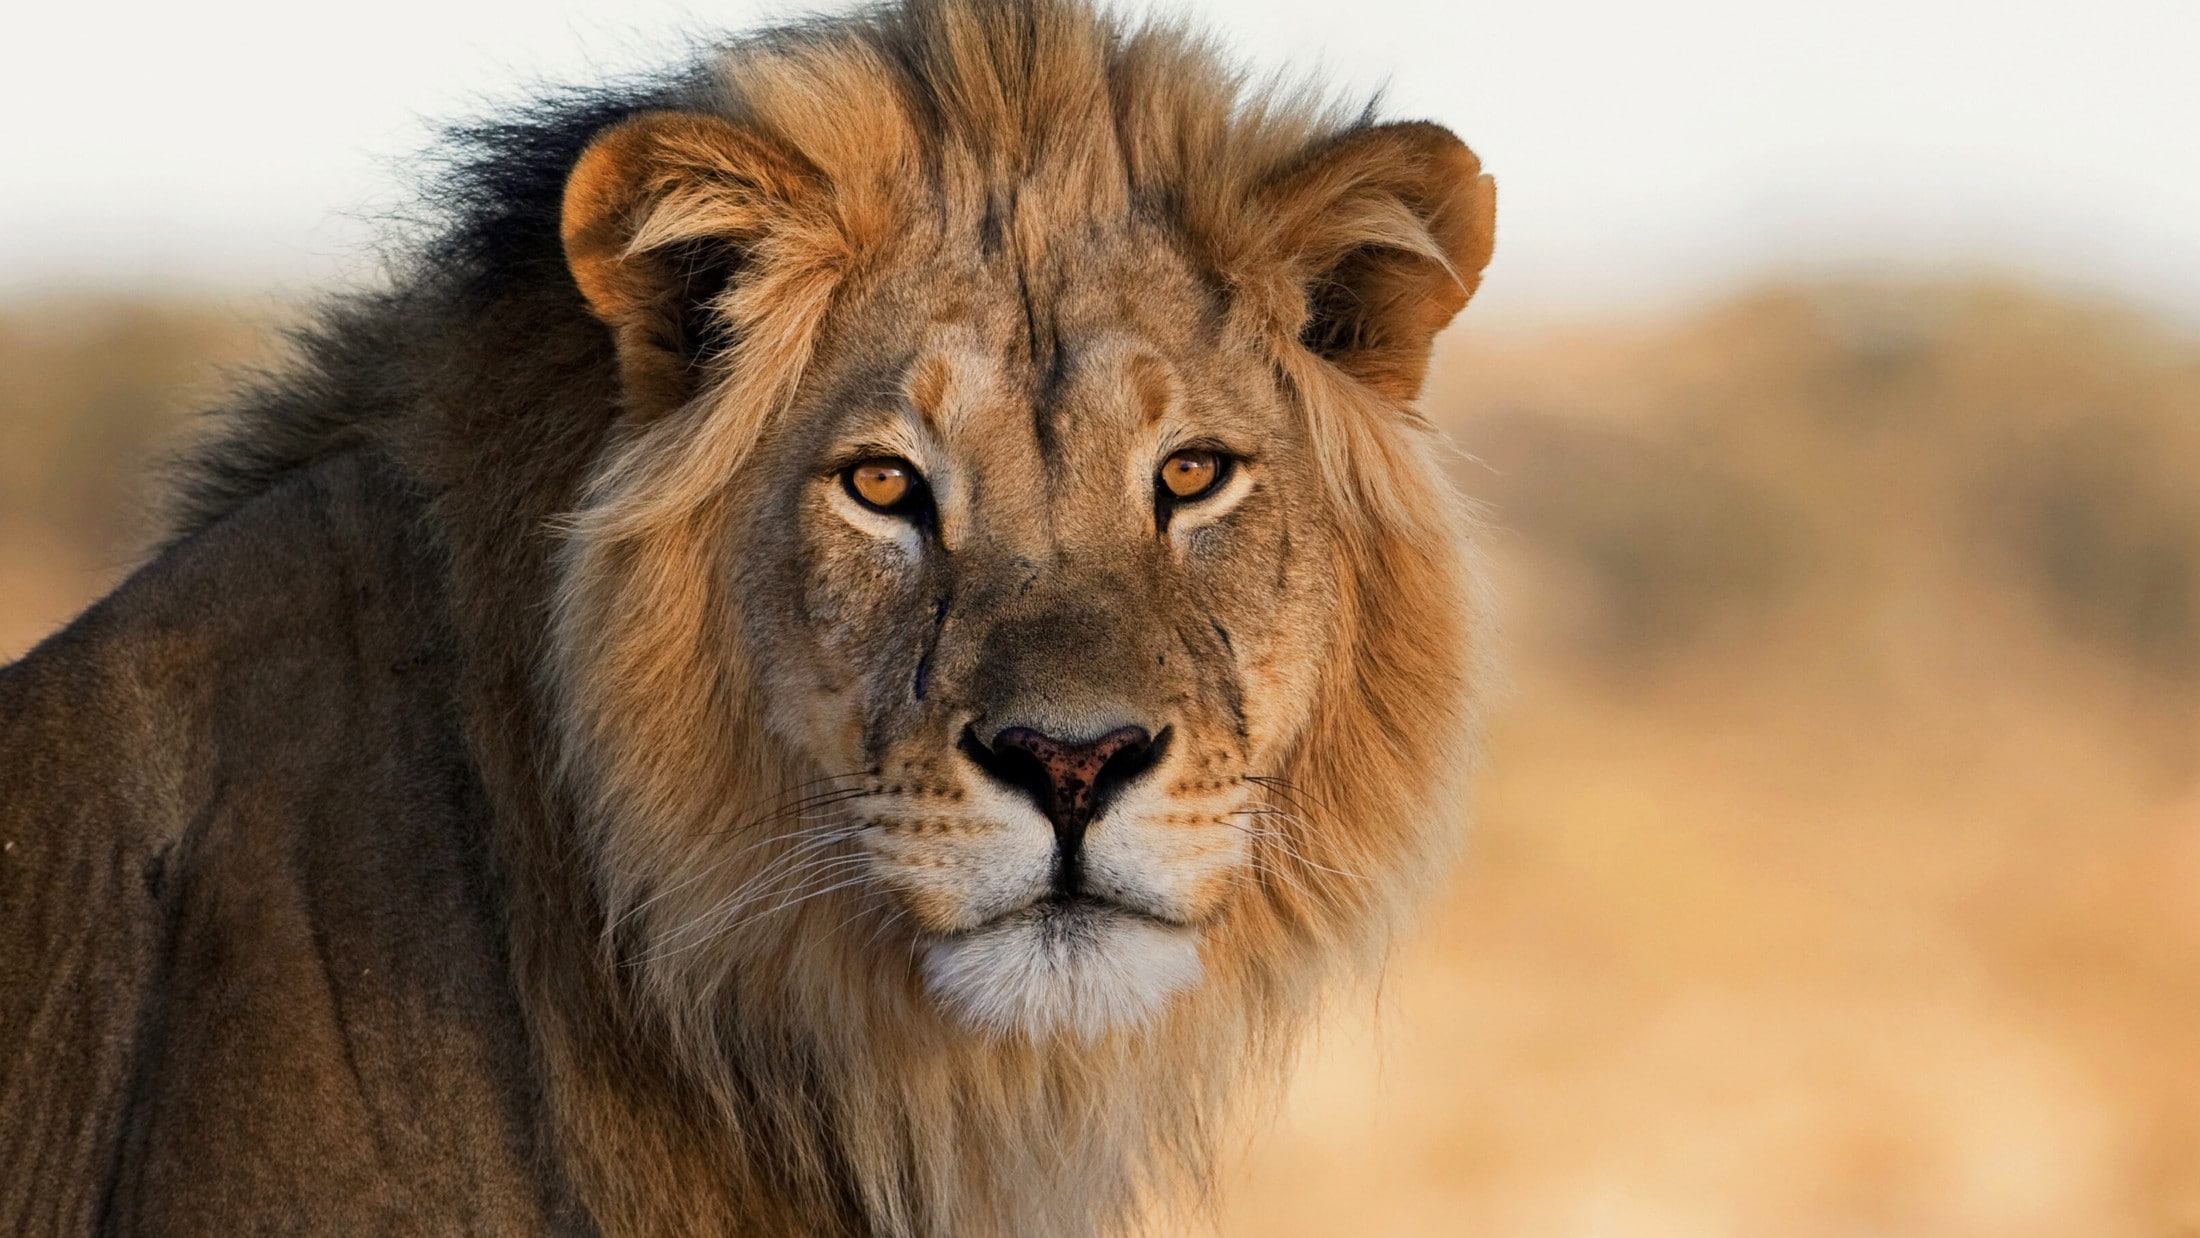 Tier eingeschläfert - Löwe griff Zoowärter während Fütterung an – tot ...